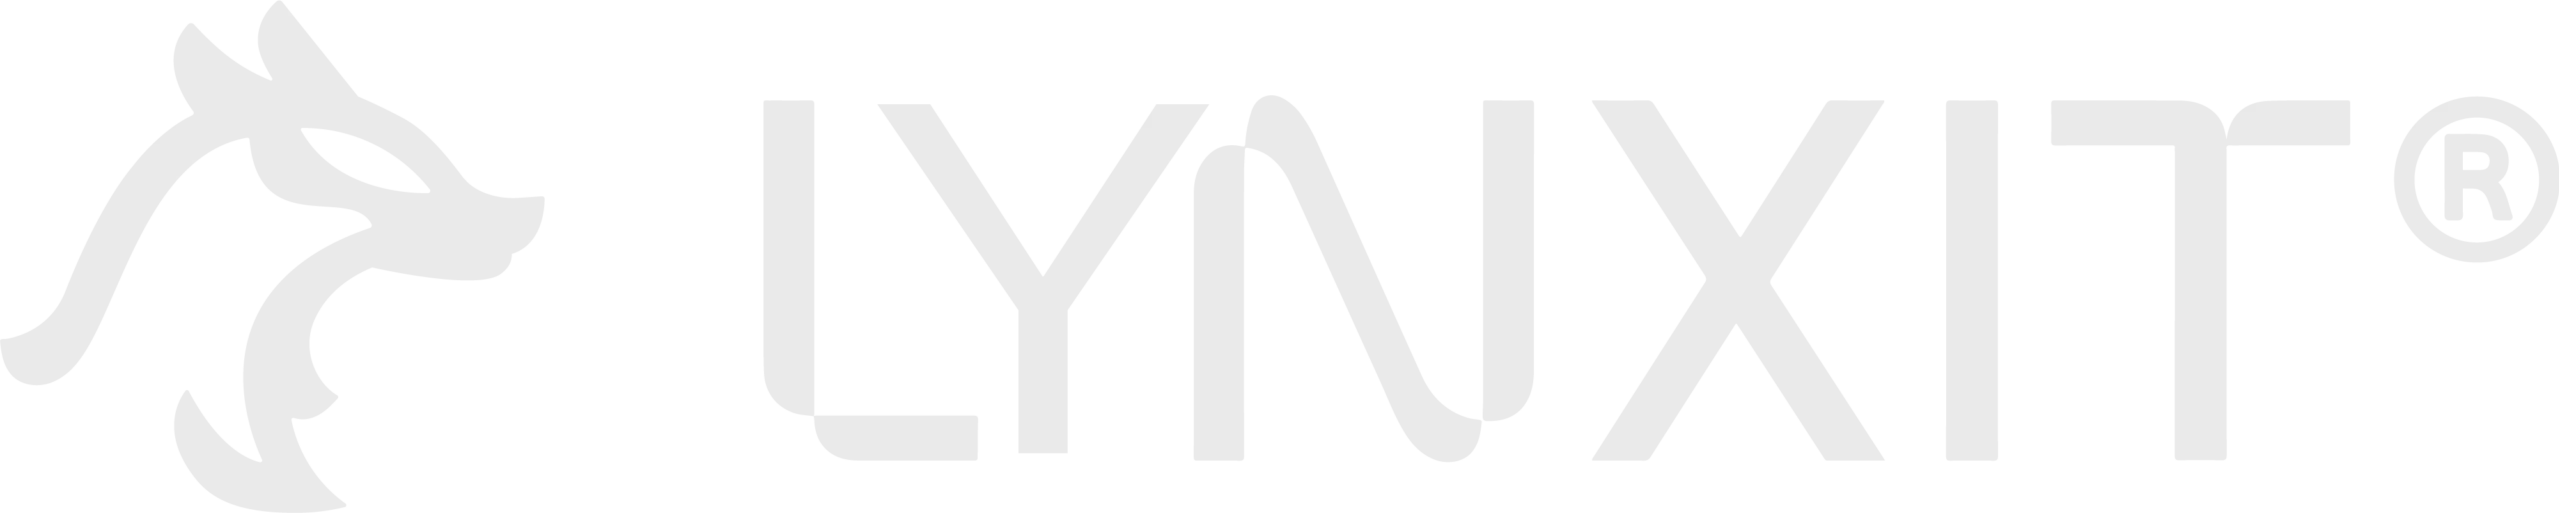 Logo LYNXIT - Soluciones informáticas & digitales